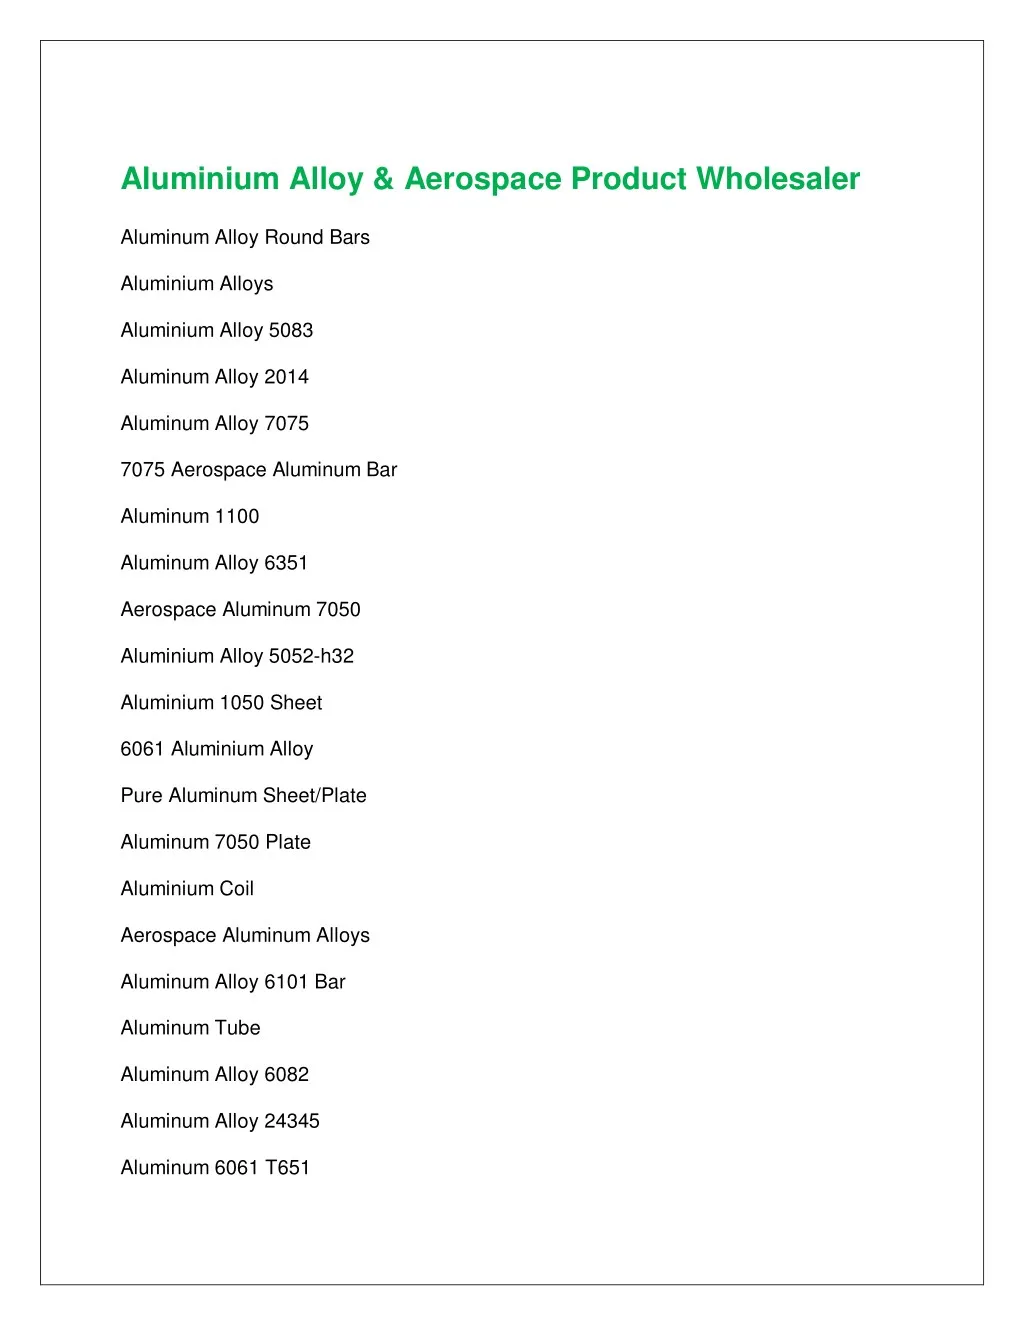 aluminium alloy aerospace product wholesaler